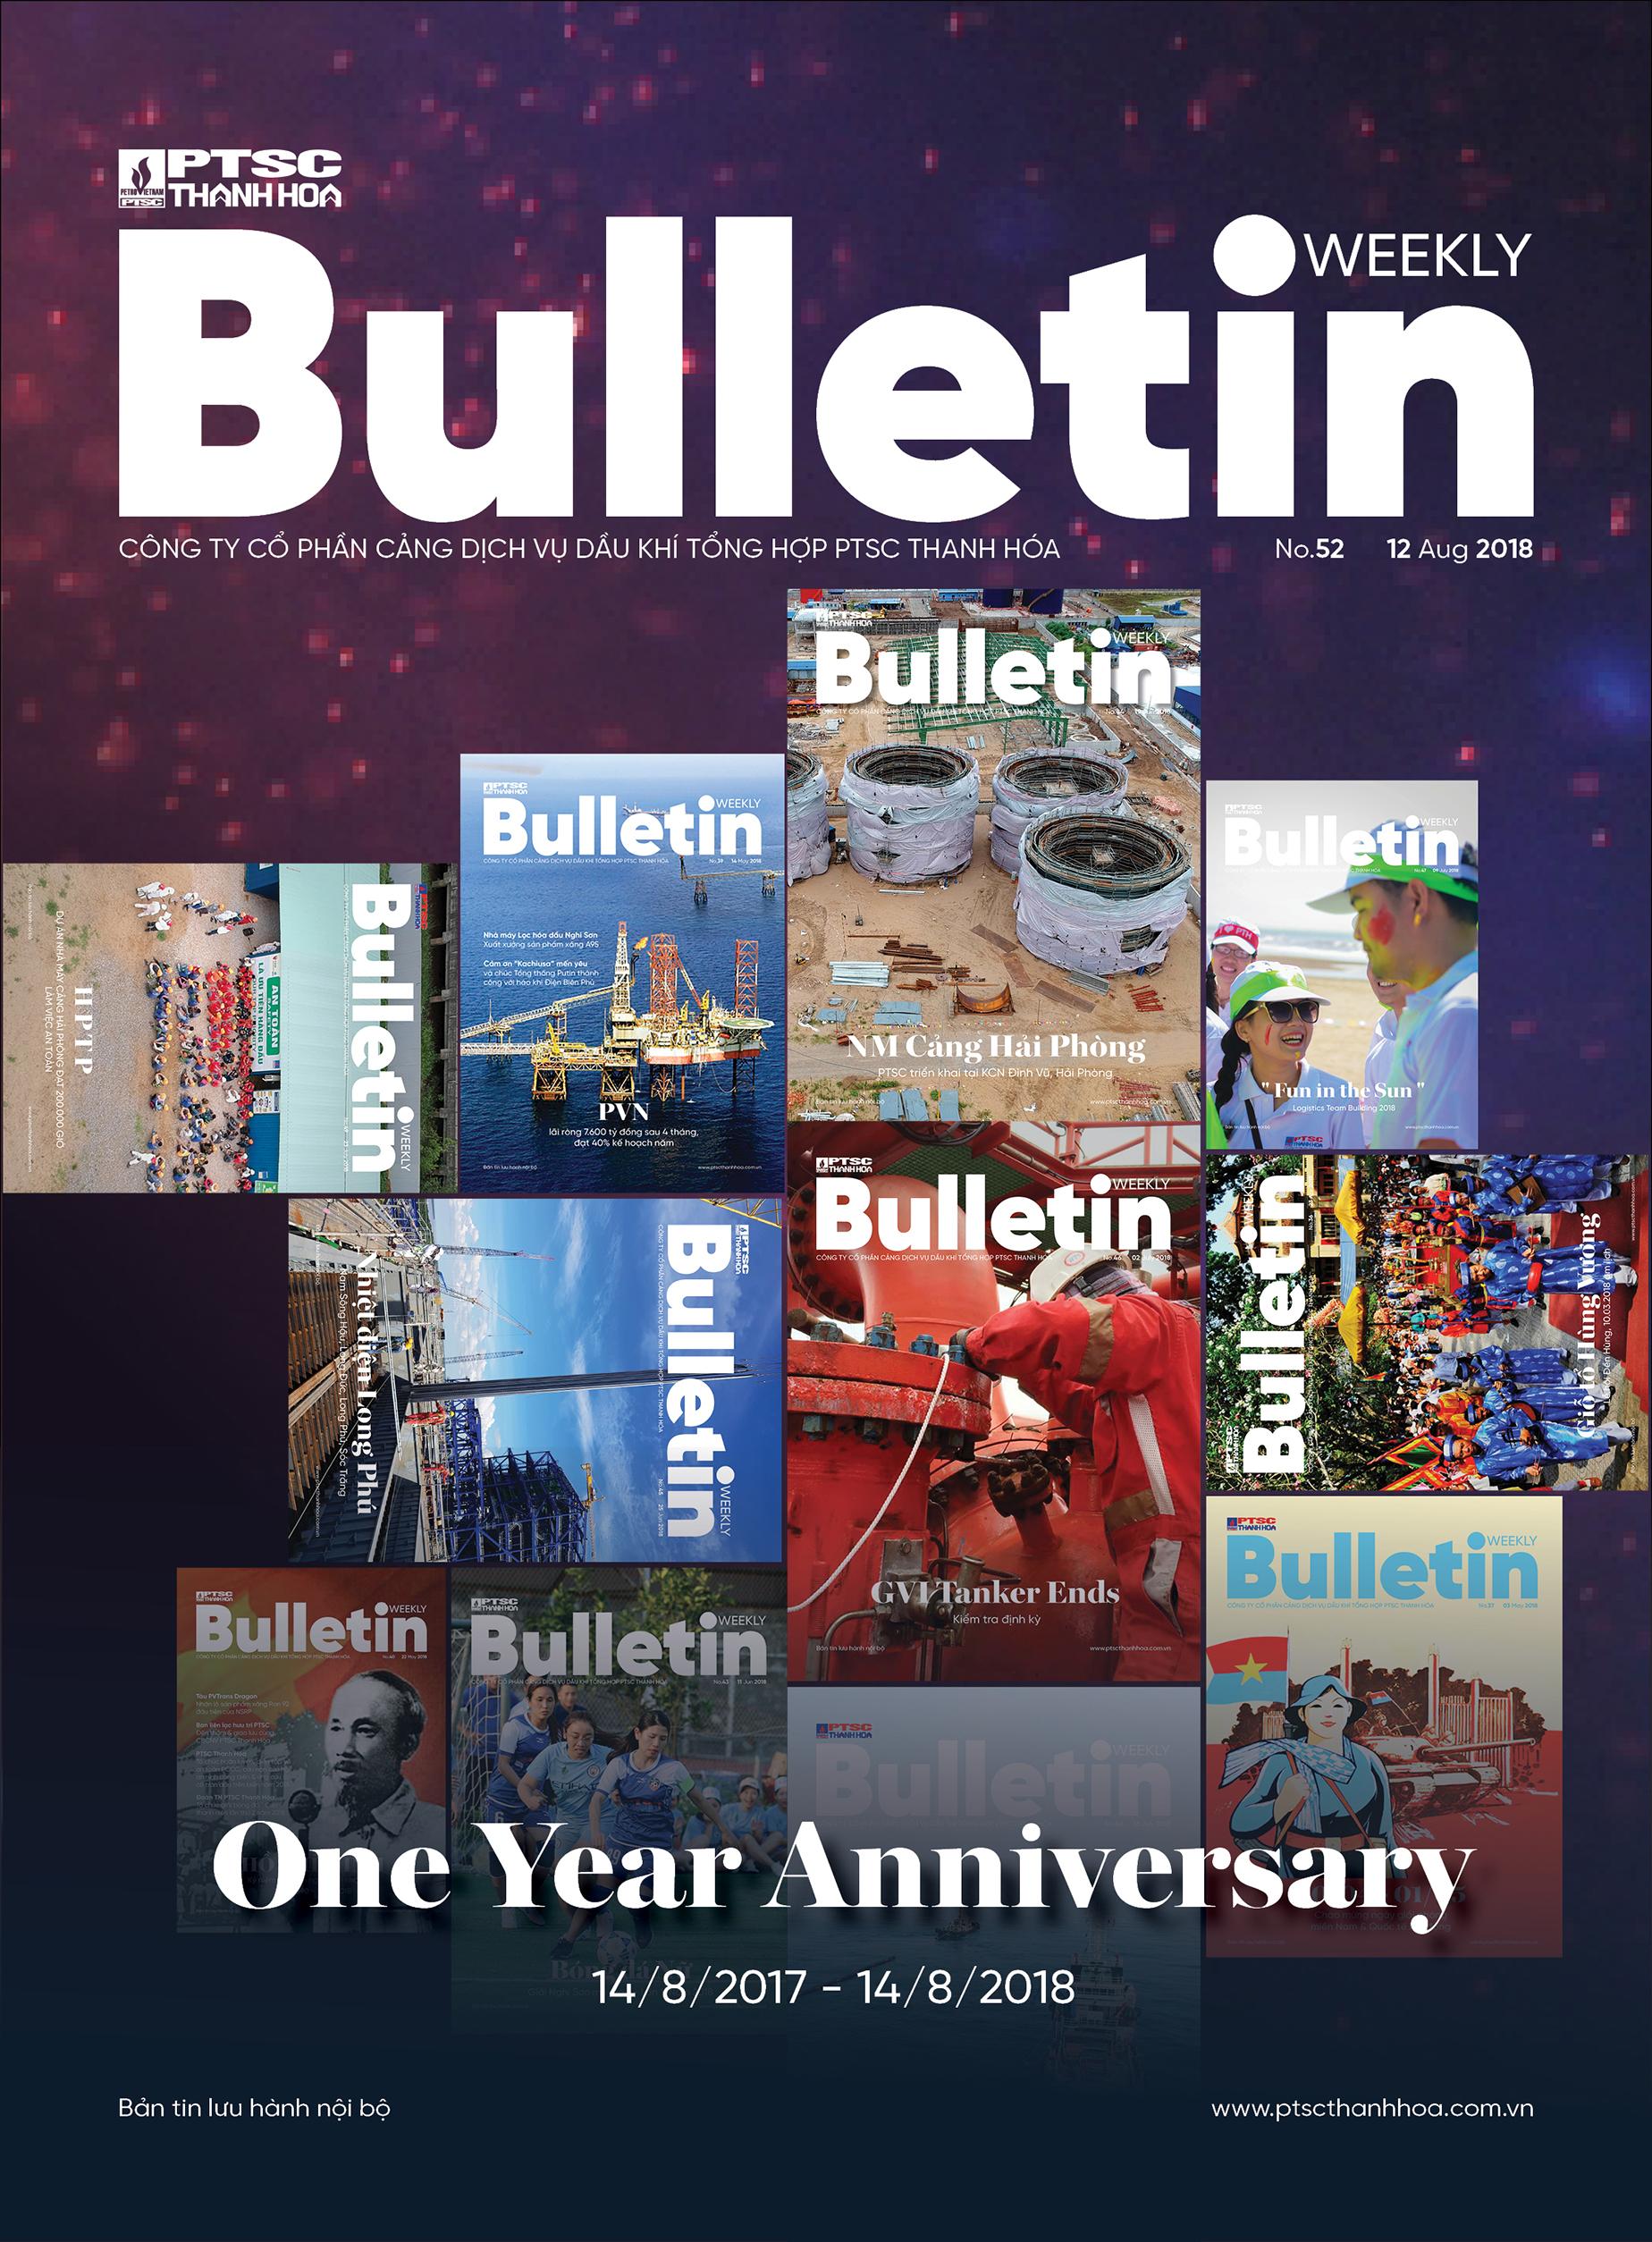 Kỷ niệm 1 năm ra mắt bản tin Weekly Bulletin – PTSC Thanh Hóa